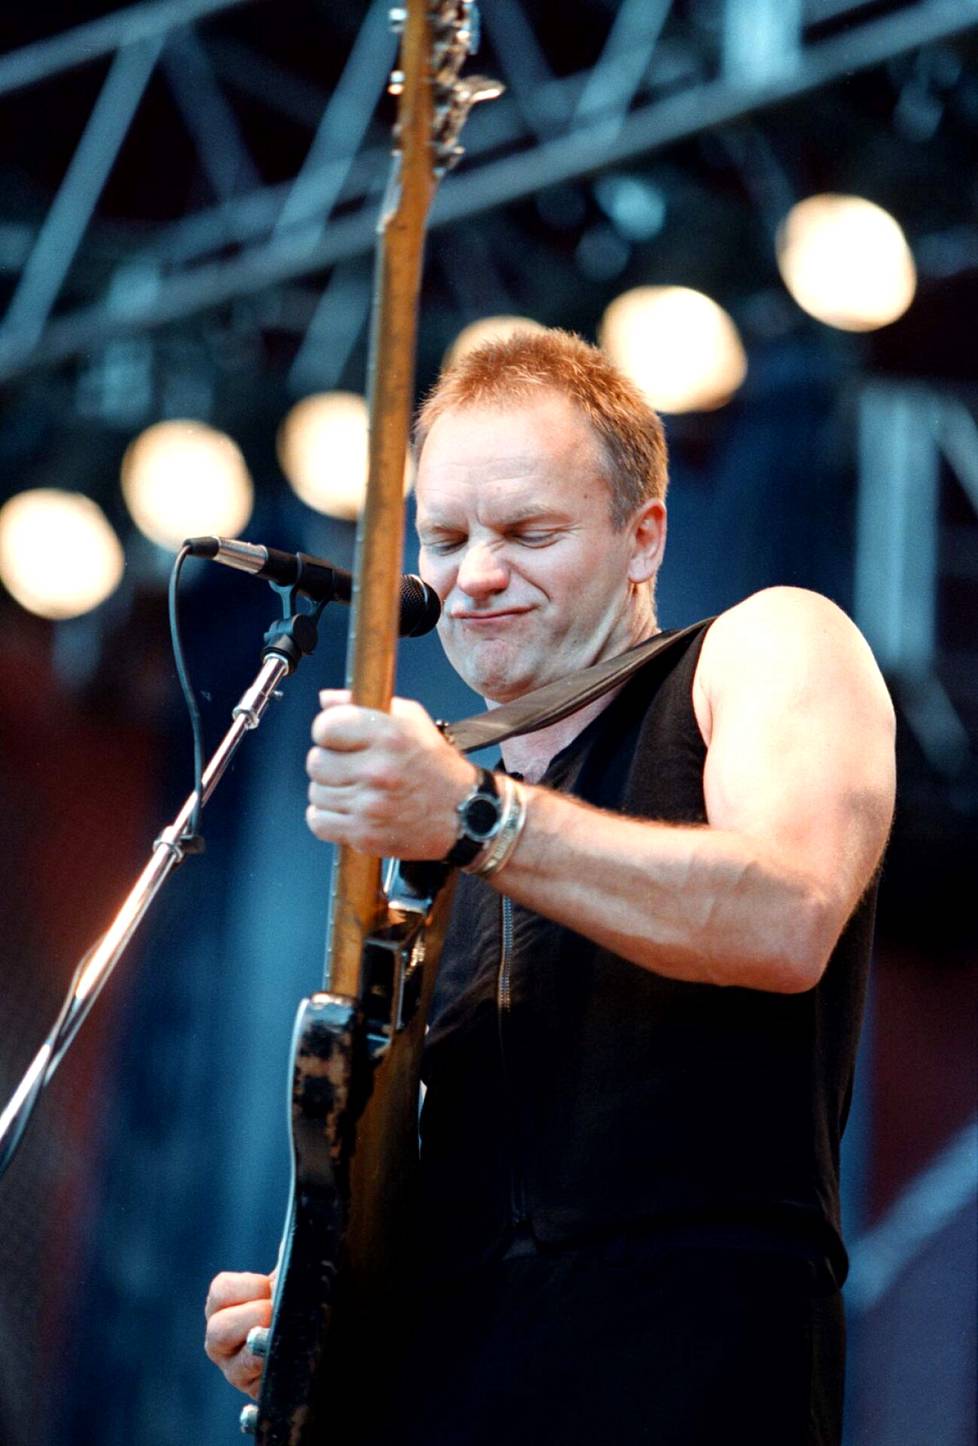 Sting oli Ruisrockin lauantain pääesiintyjä vuonna 1997 ja samalla tapahtuman siihen mennessä kallein esiintyjä.